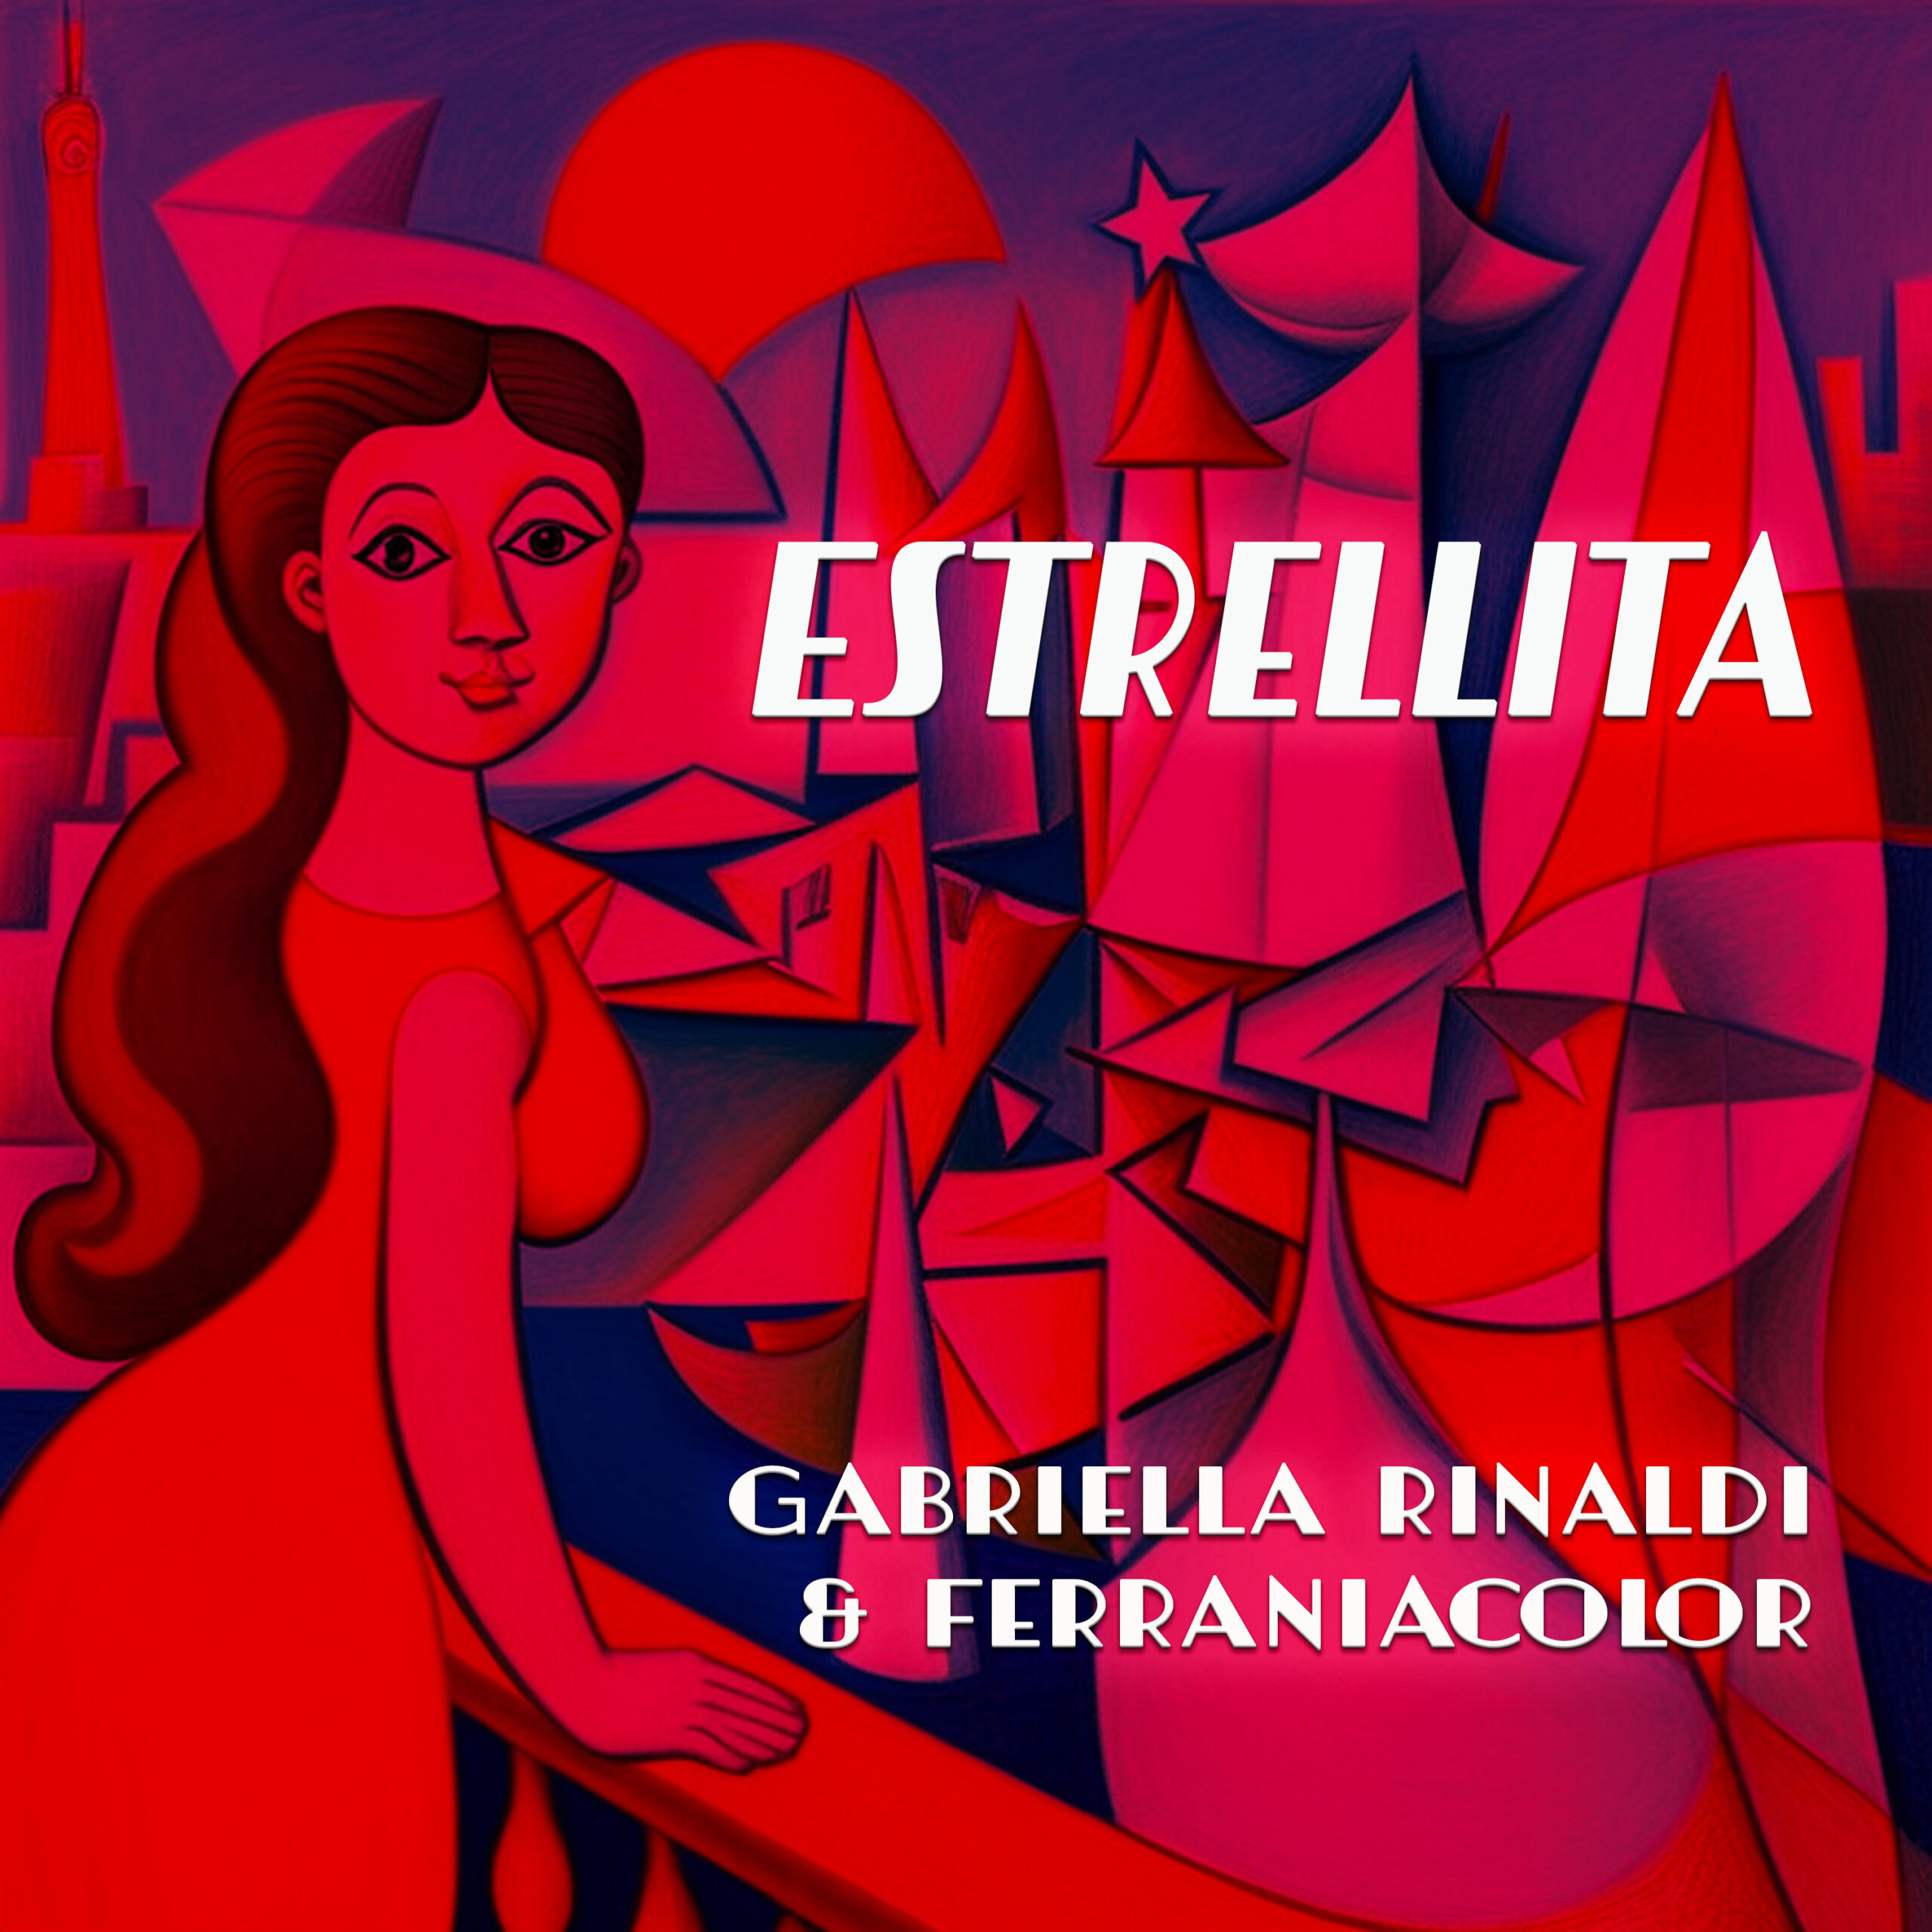 Al momento stai visualizzando “Estrellita”, la nuova versione di Gabriella Rinaldi e Ferraniacolor